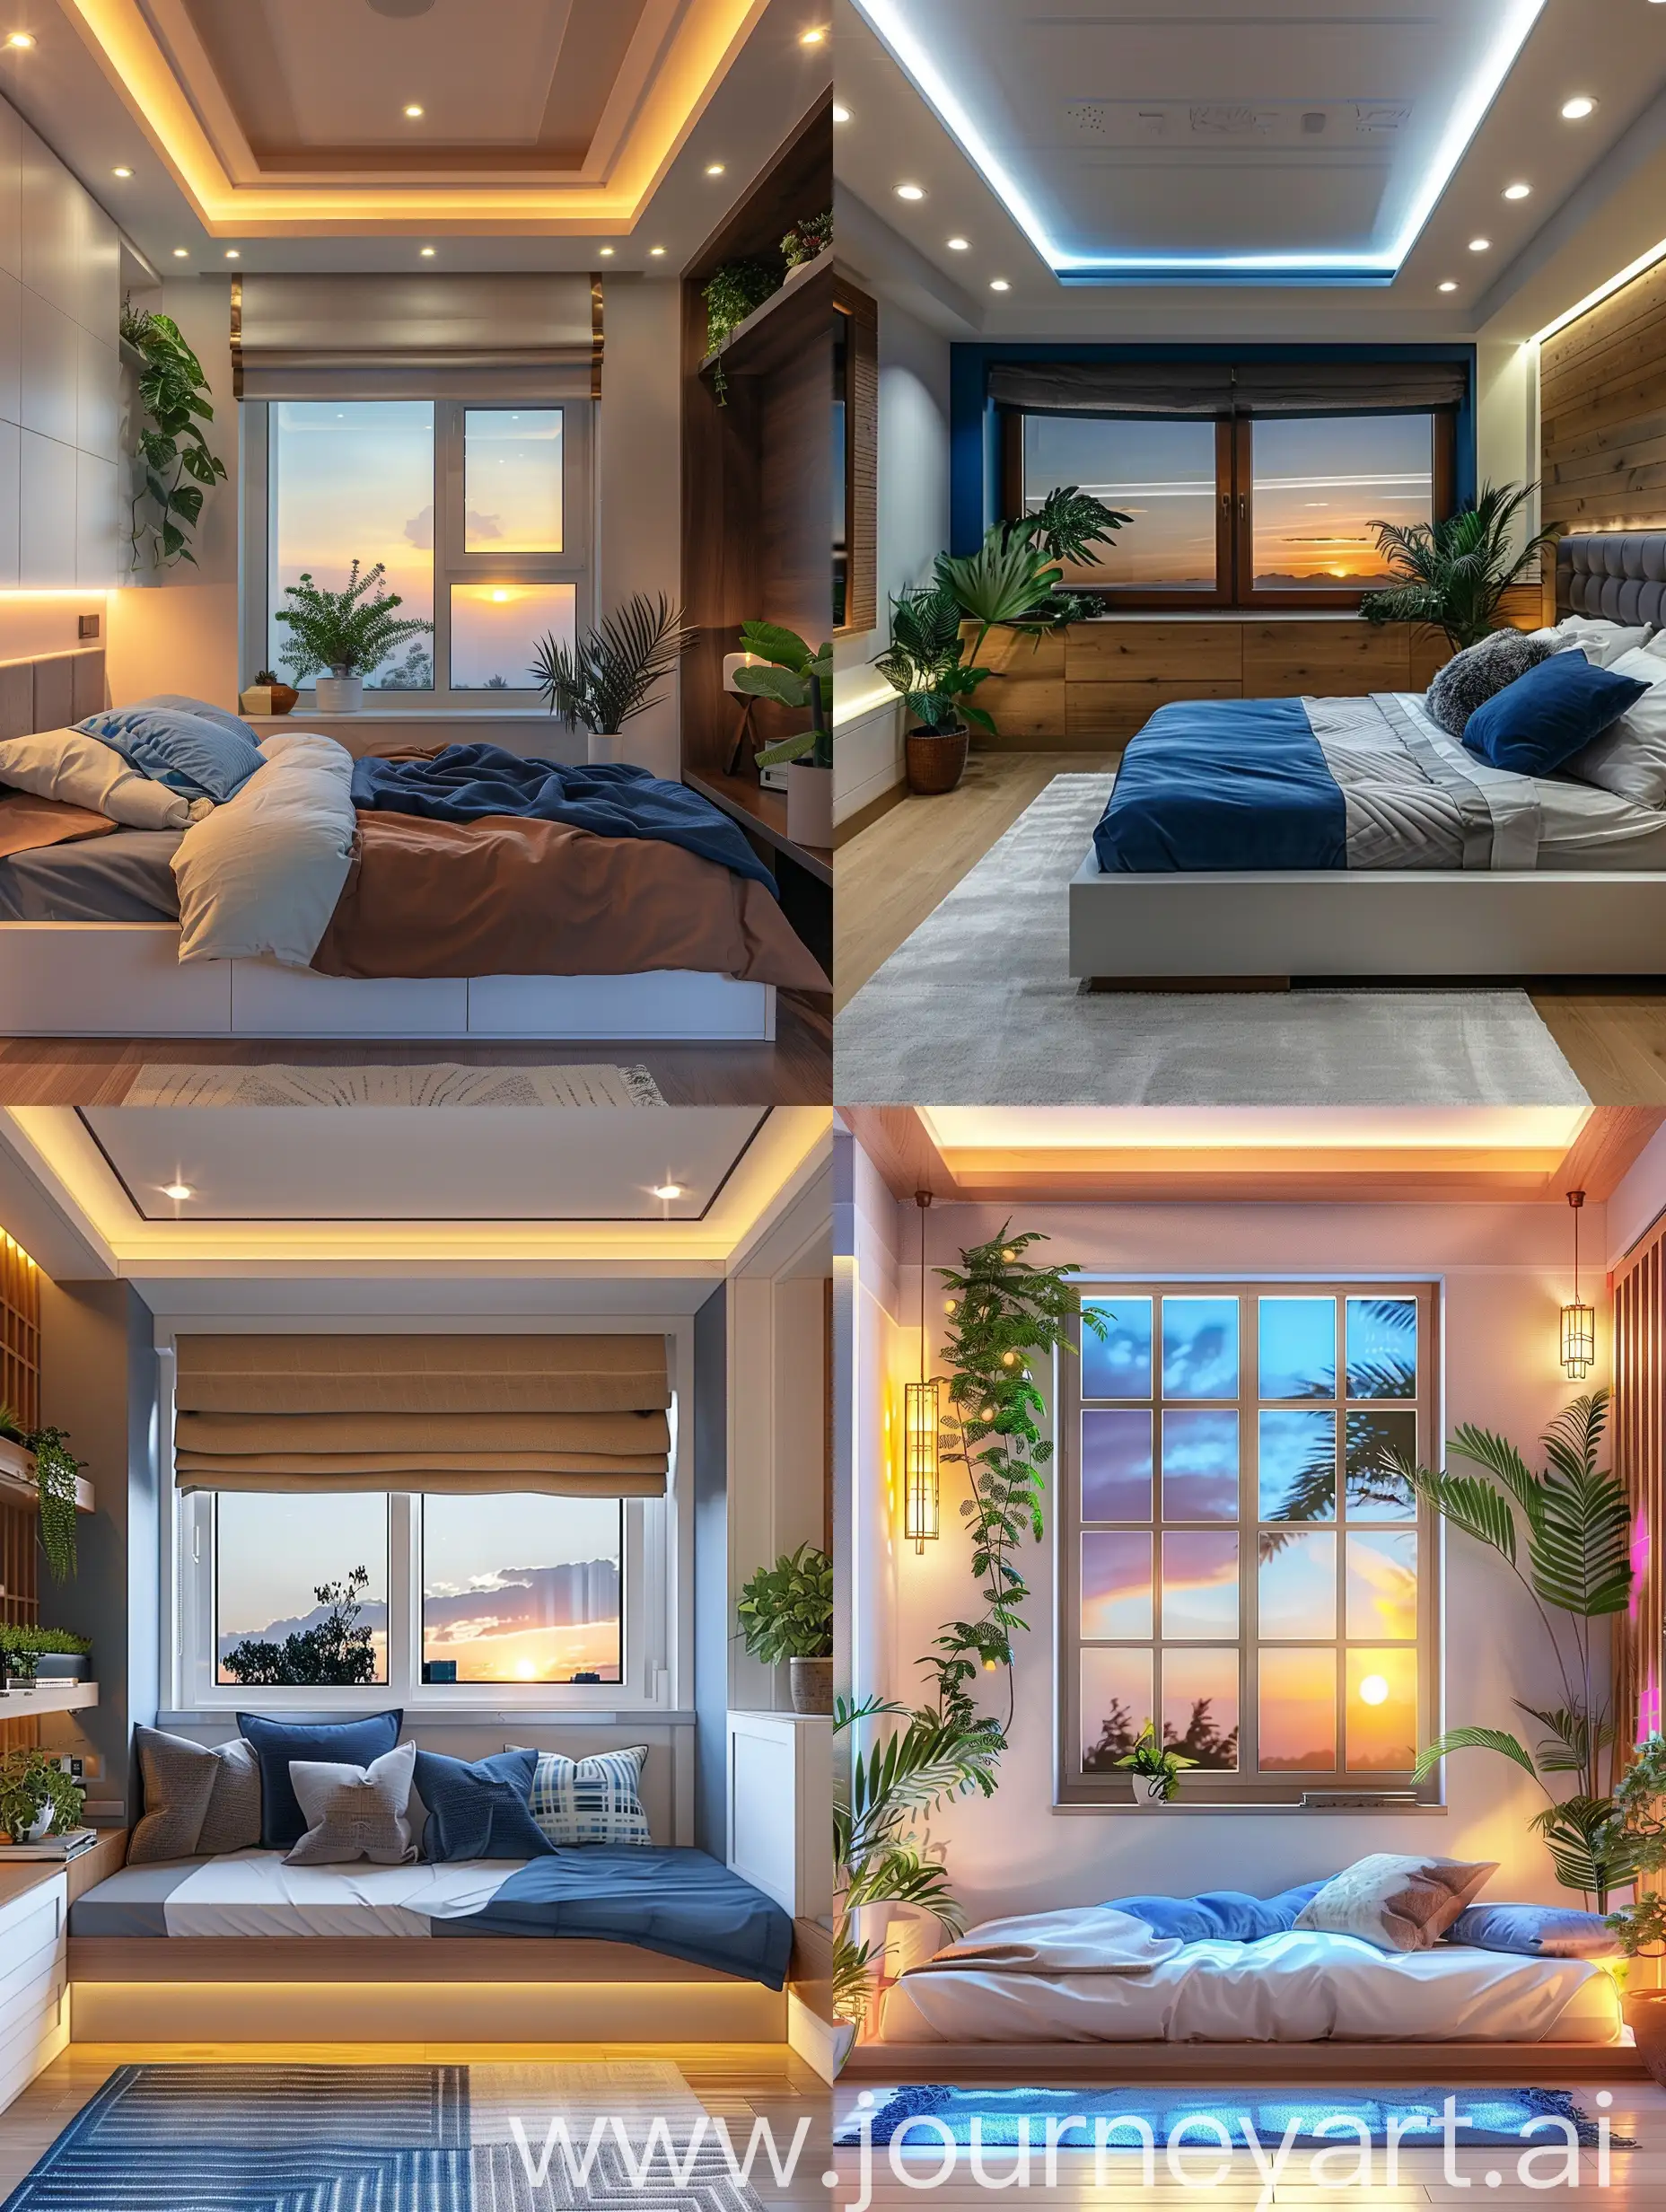 Camera da letto stile moderno con finestra. Colori bianco Blu e marrone. Piante. Luci del tramonto